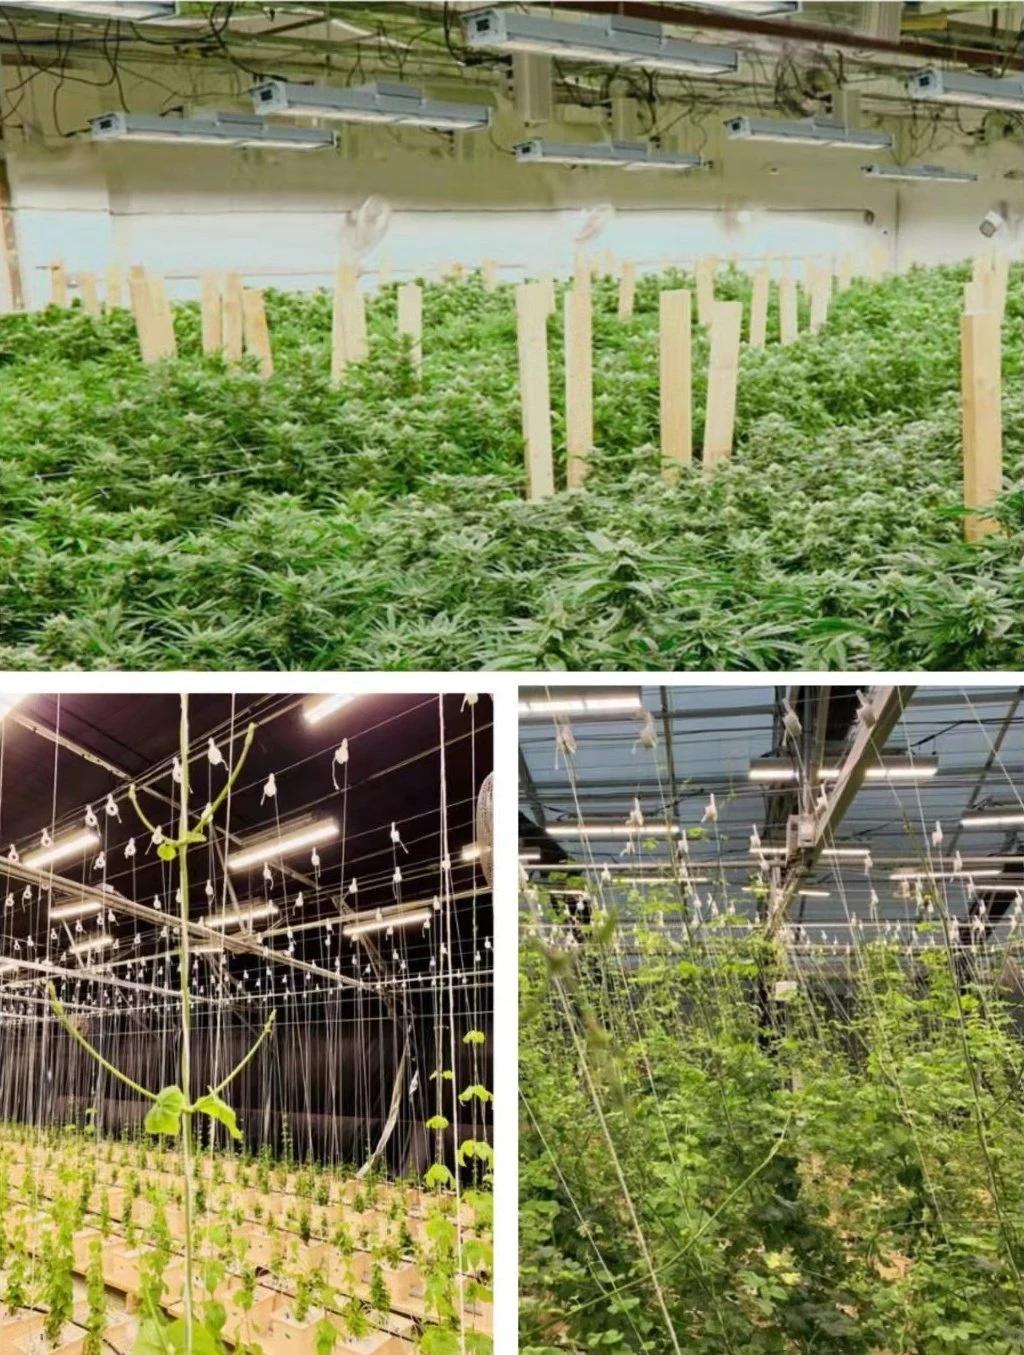 Best Seller 300W Waterproof Full Spectrum LED Grow Light for Indoor Plants Growing Seeding Veg Blooming